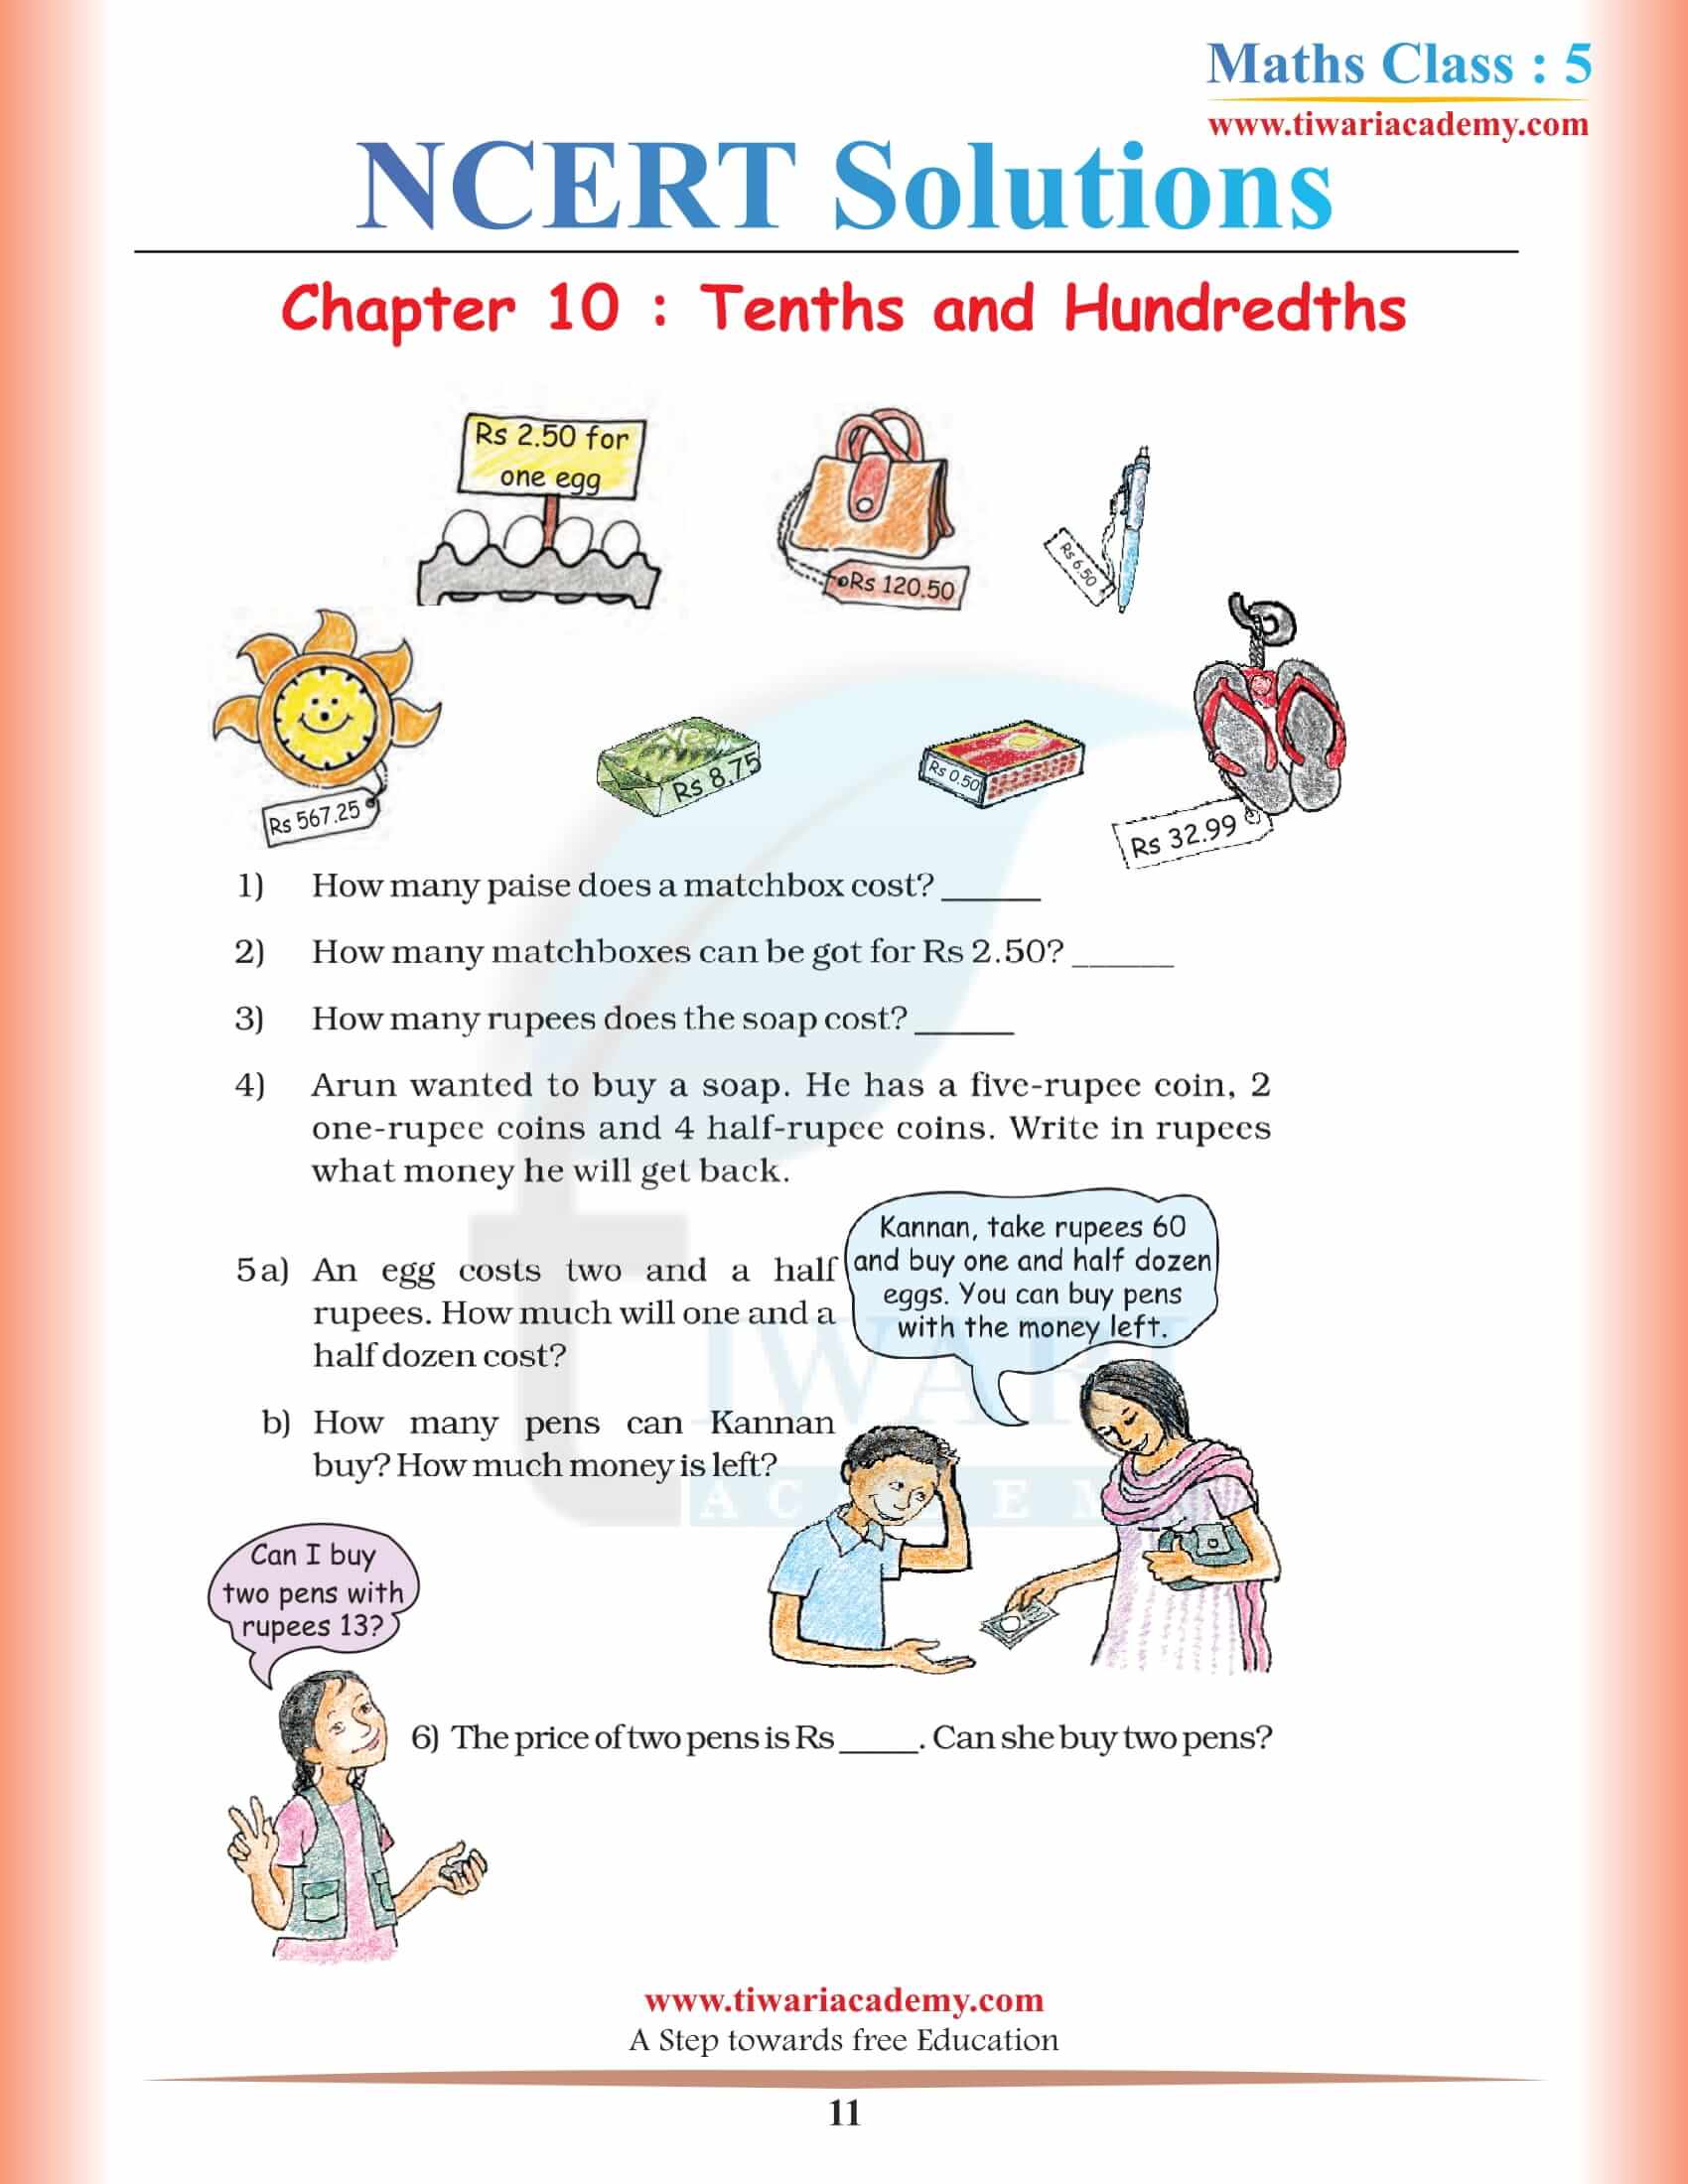 Class 5 Maths NCERT Chapter 10 Solutions